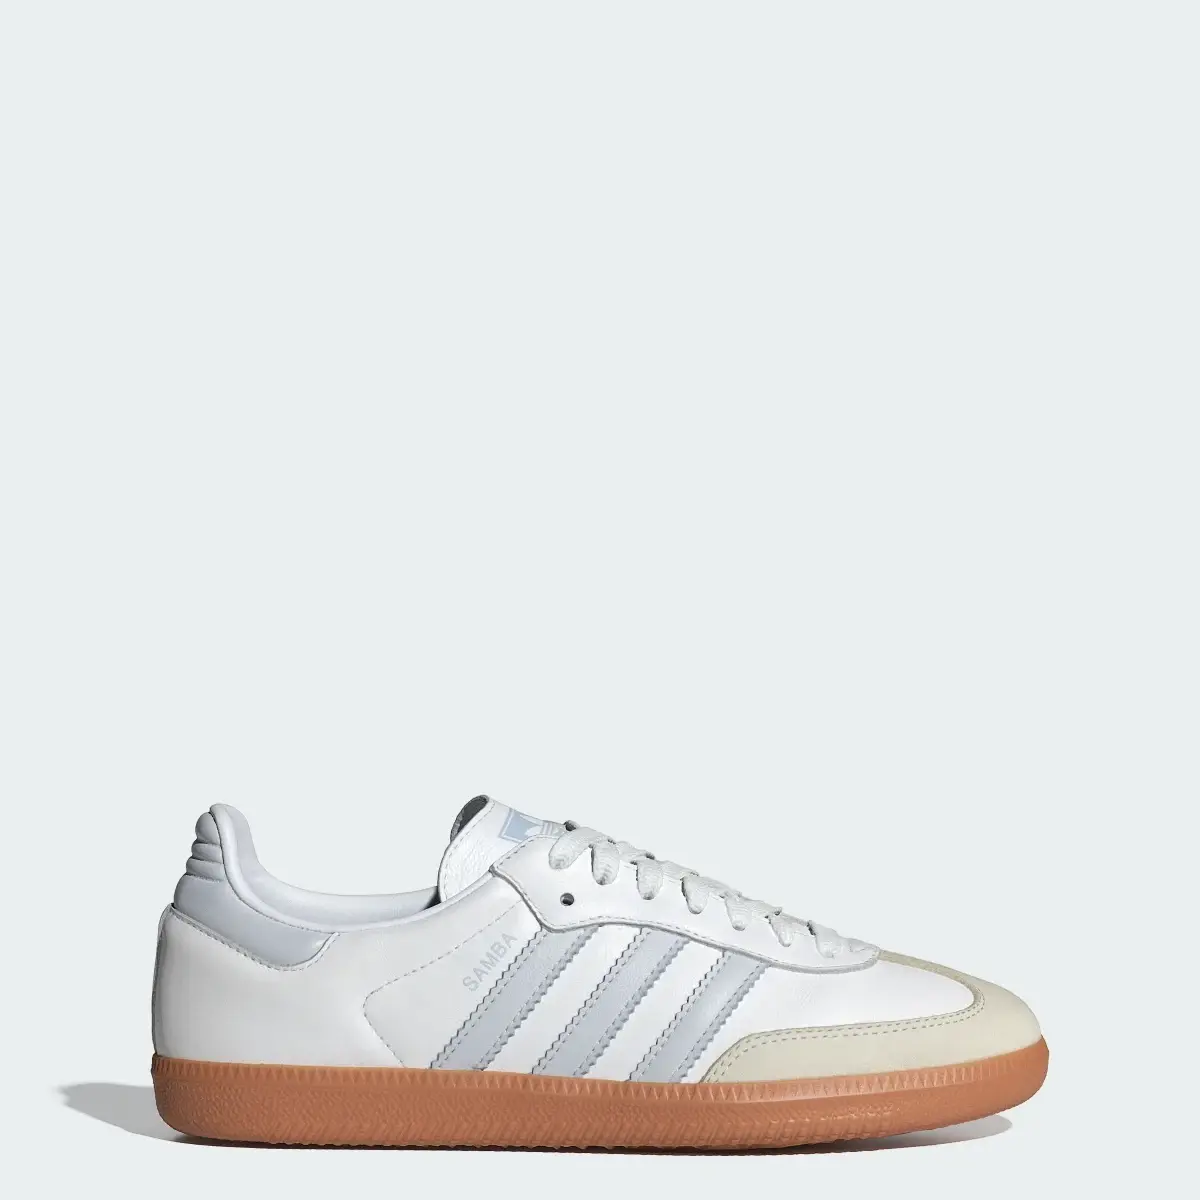 Adidas Samba OG Ayakkabı. 1